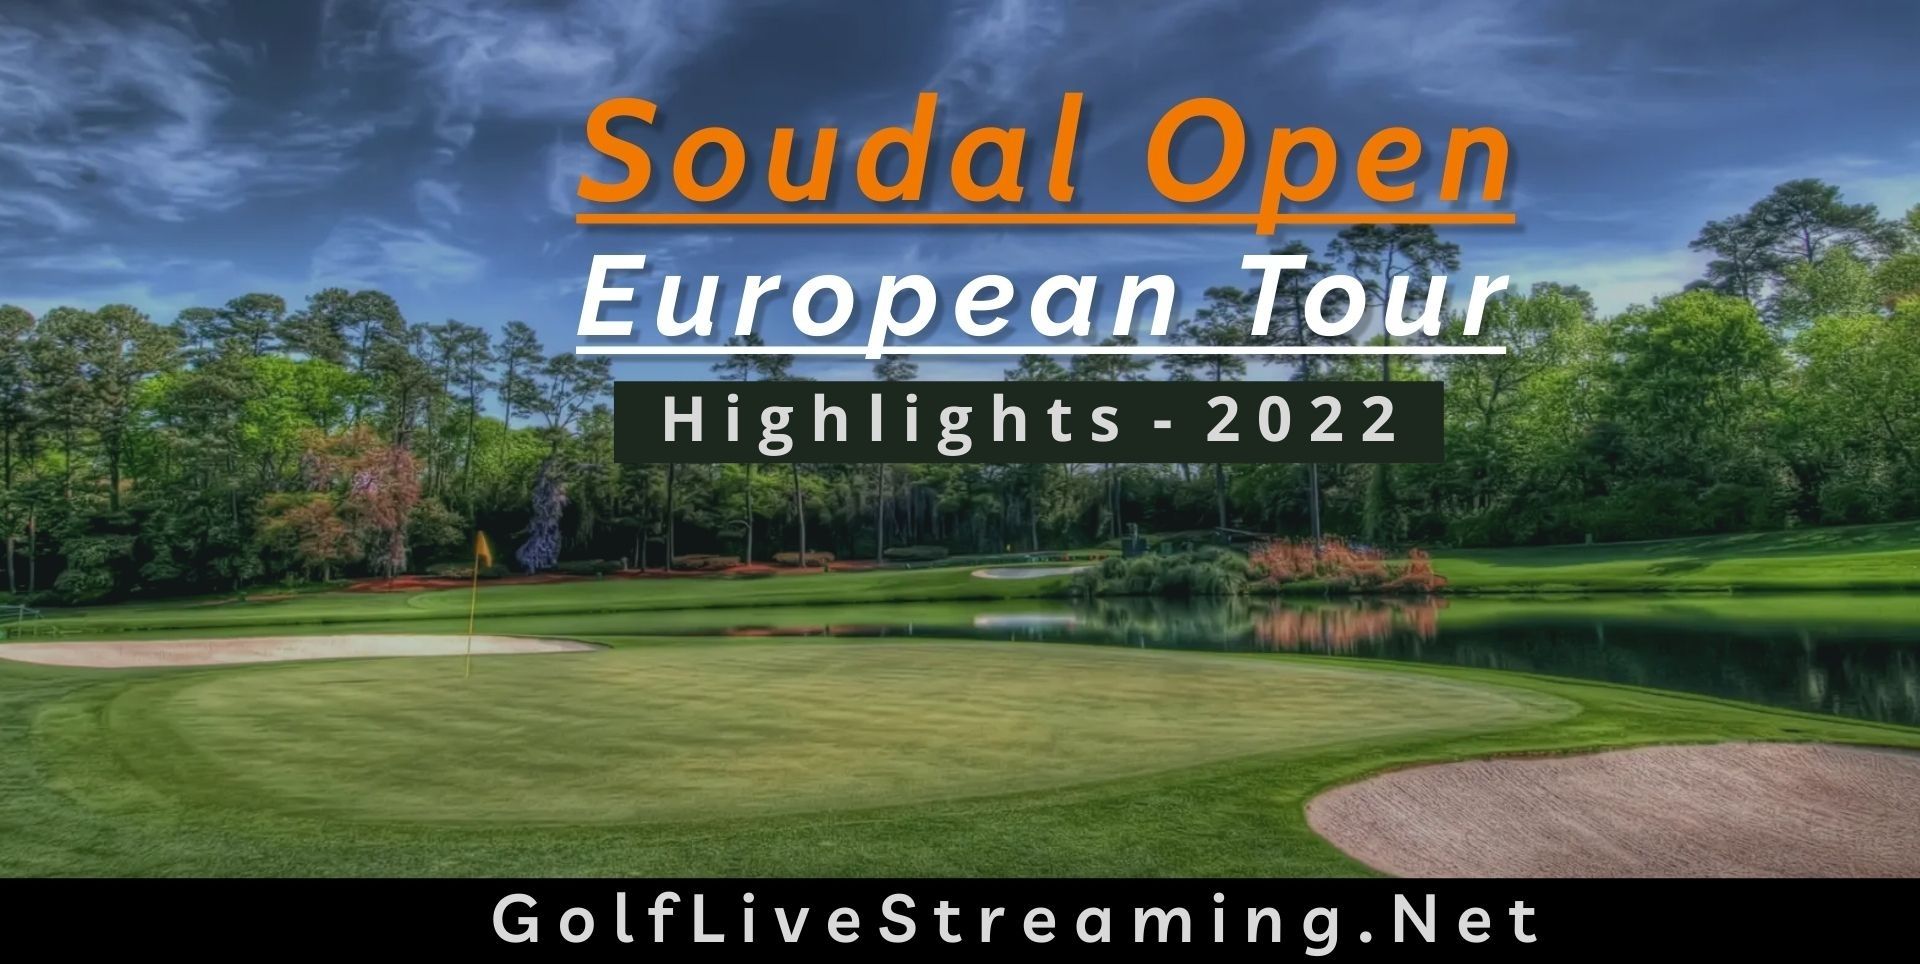 Soudal Open Round 4 Highlights 2022 European Tour